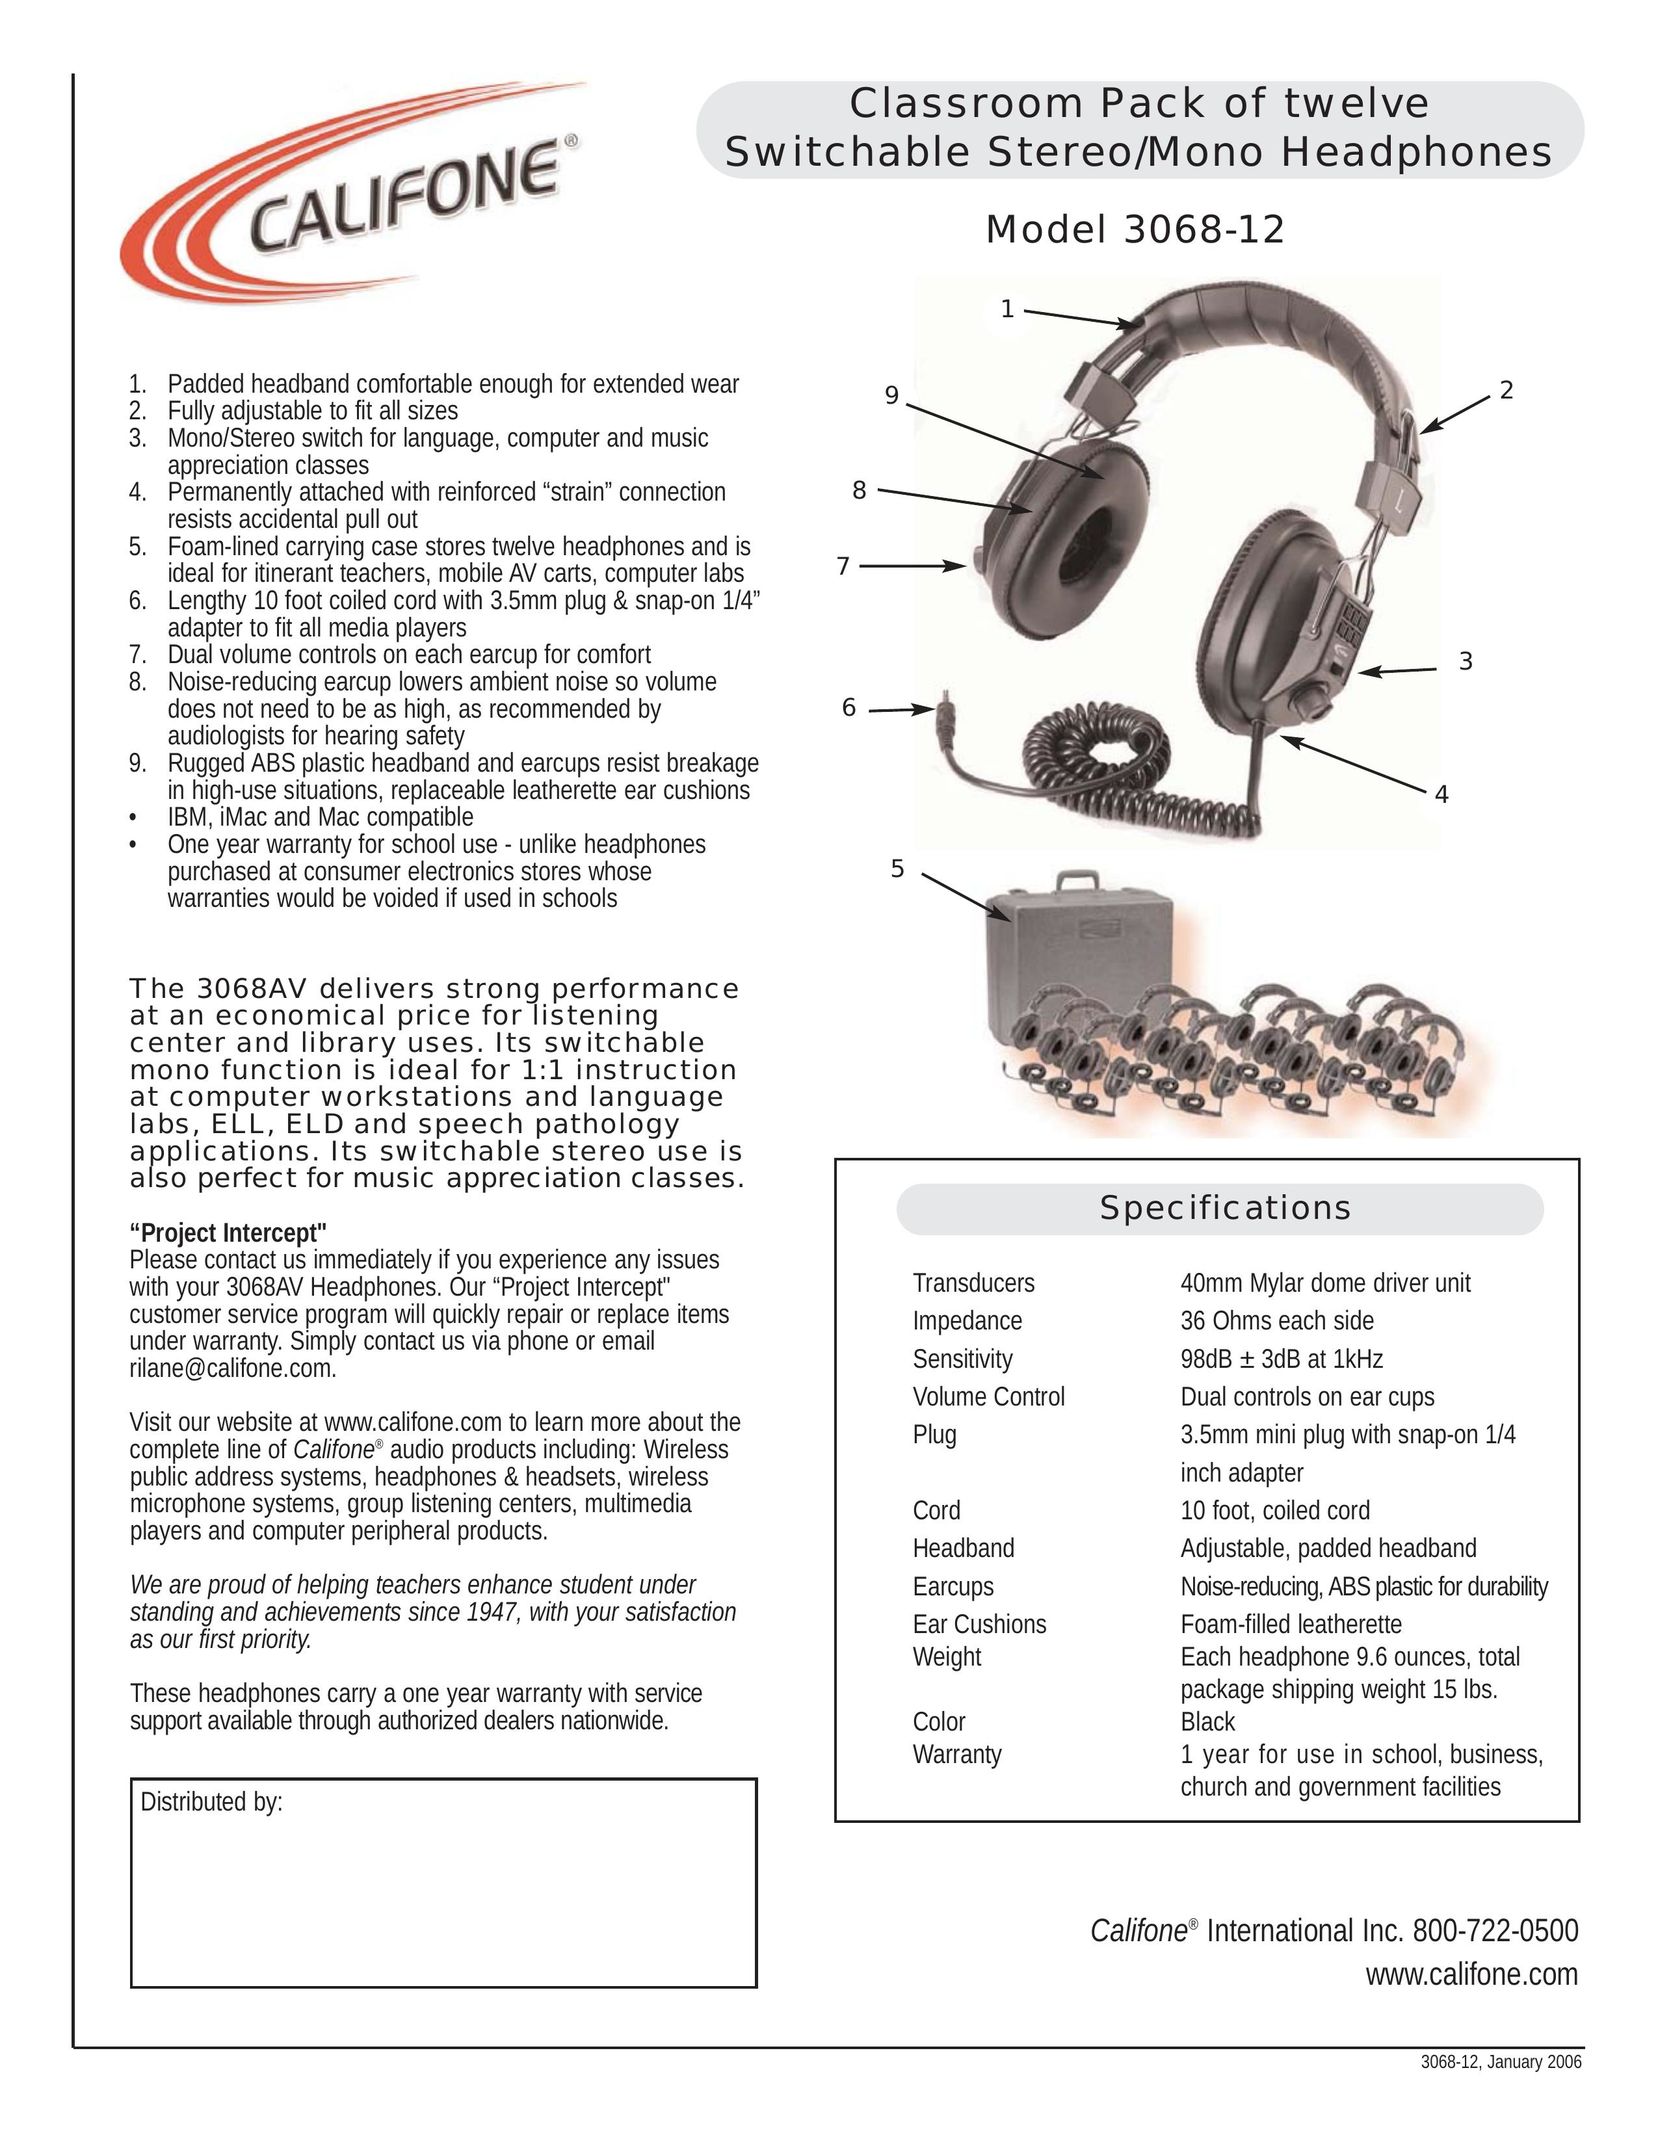 Califone 3068-12 Headphones User Manual